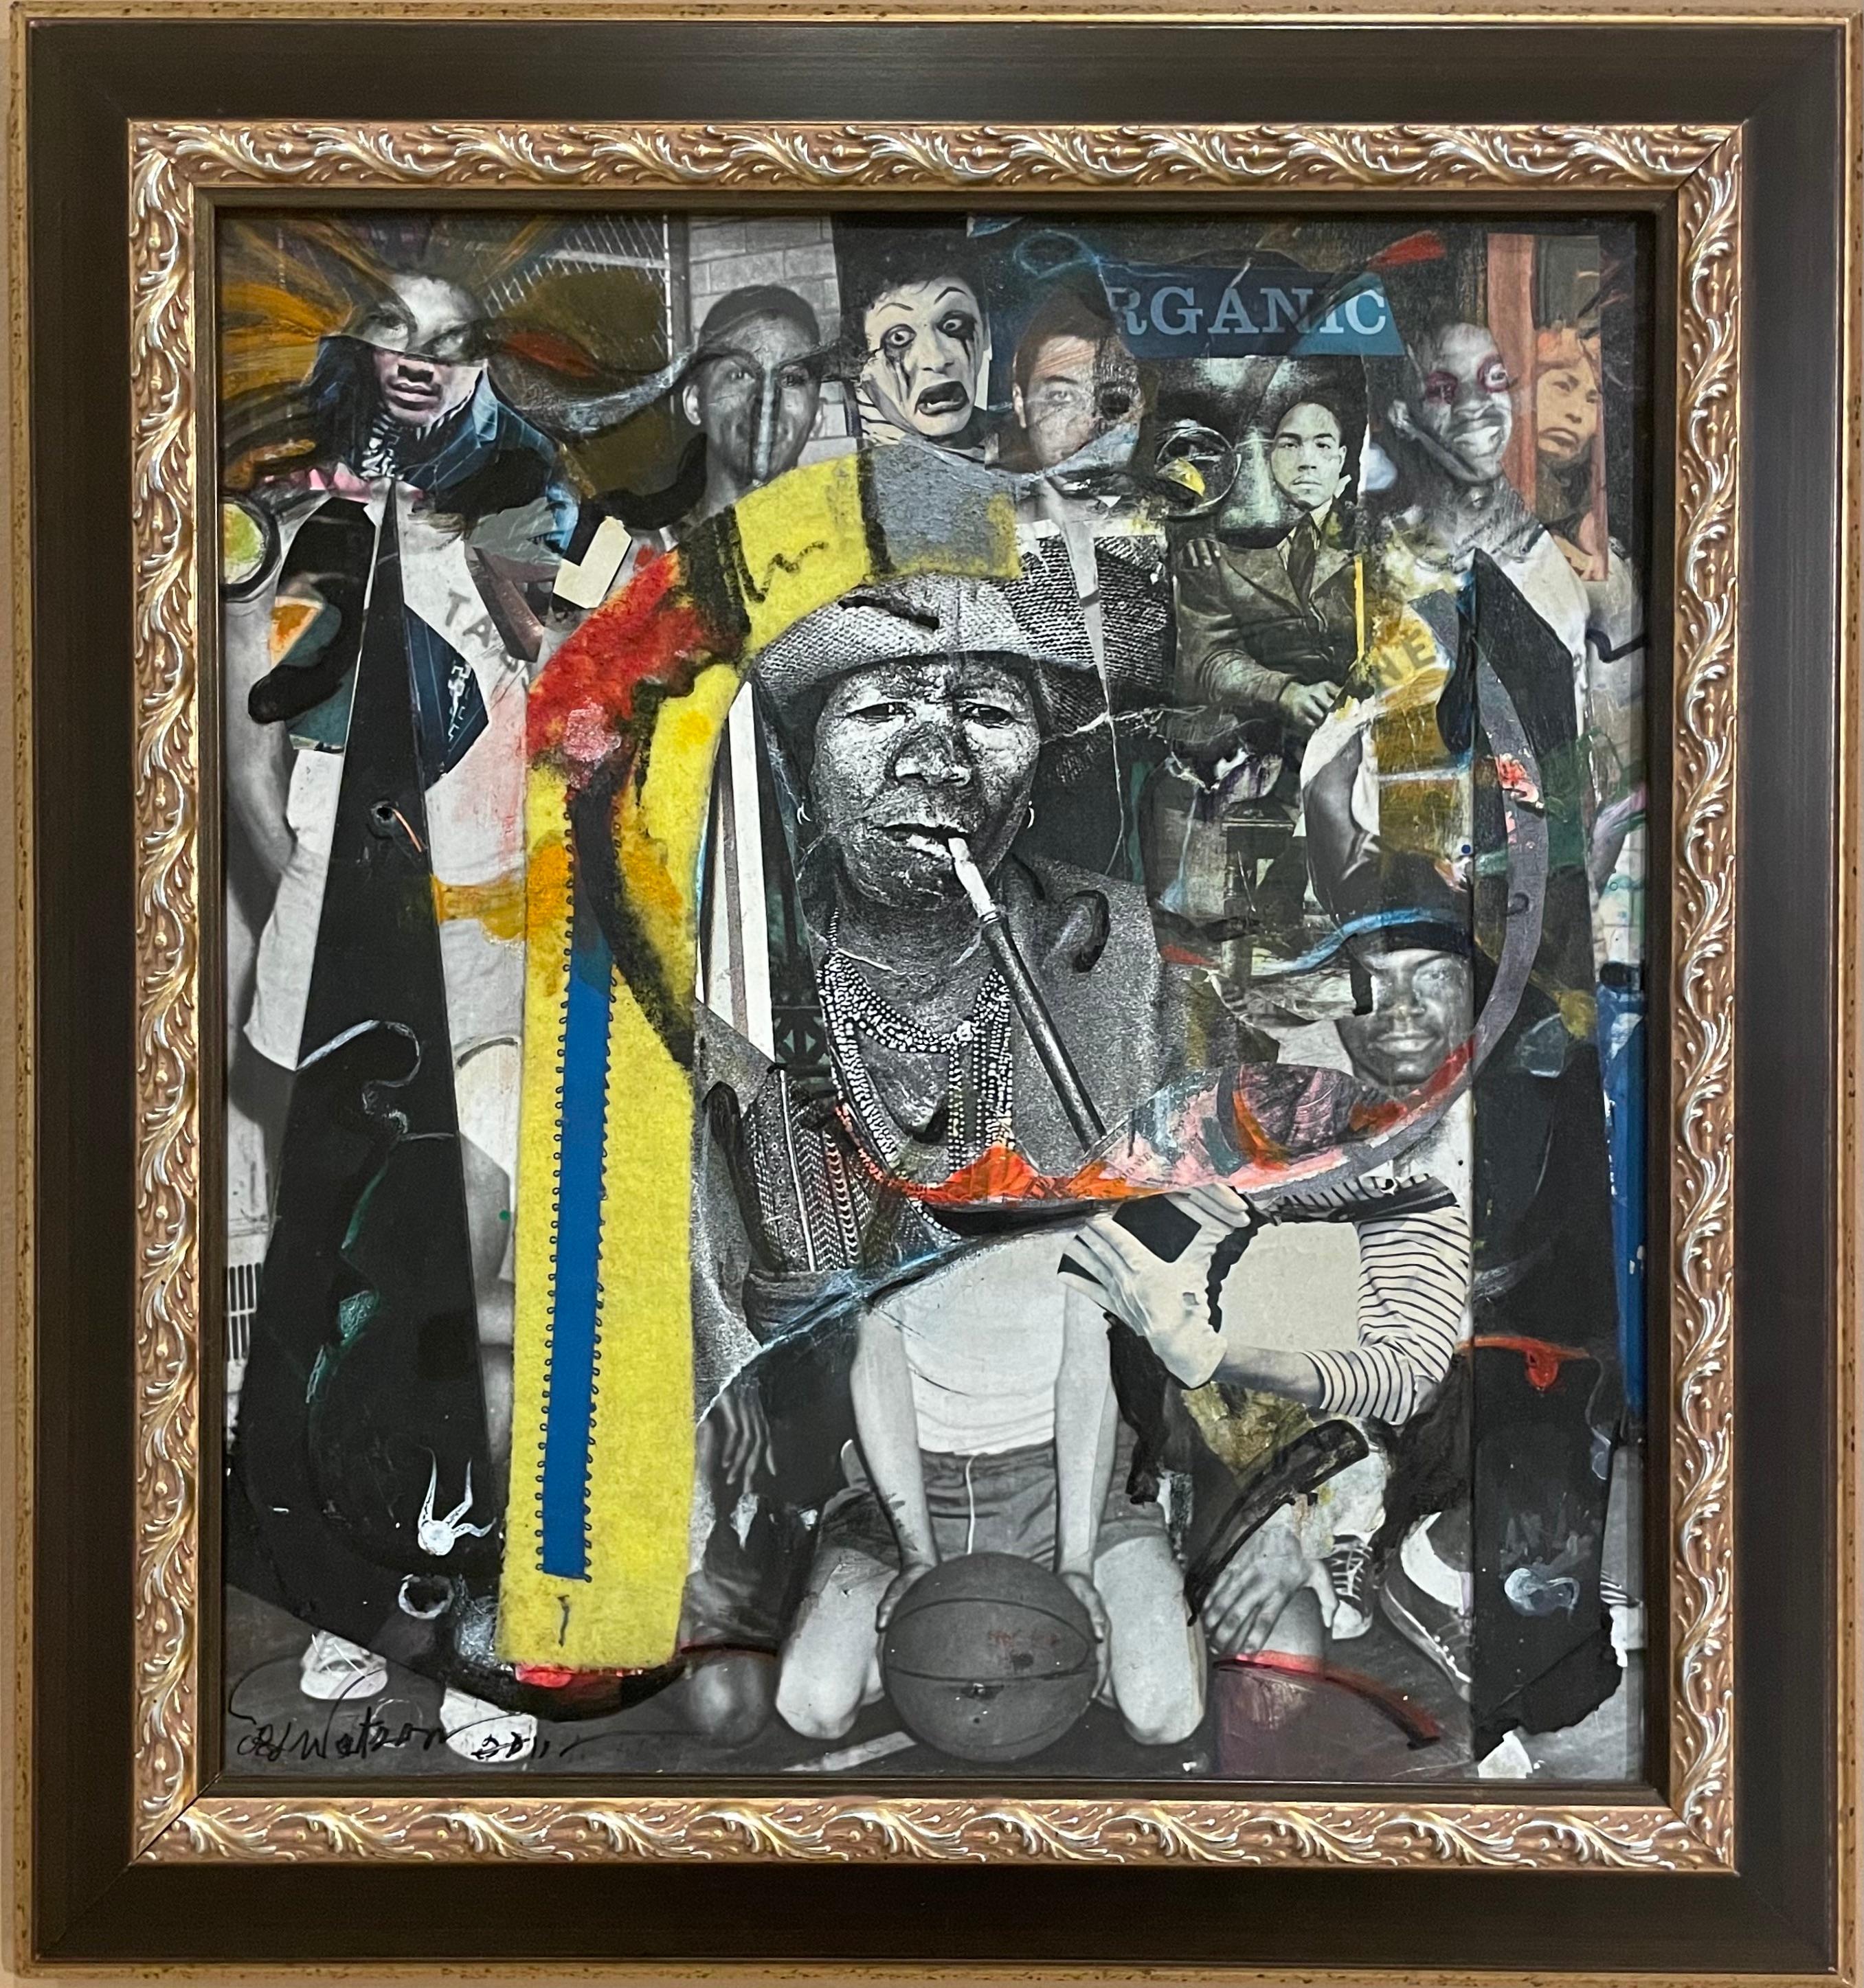 Figurative Painting Richard J. Watson - Pipe Dreams : peinture de collage afro-américaine avec photographies, personnages et objets